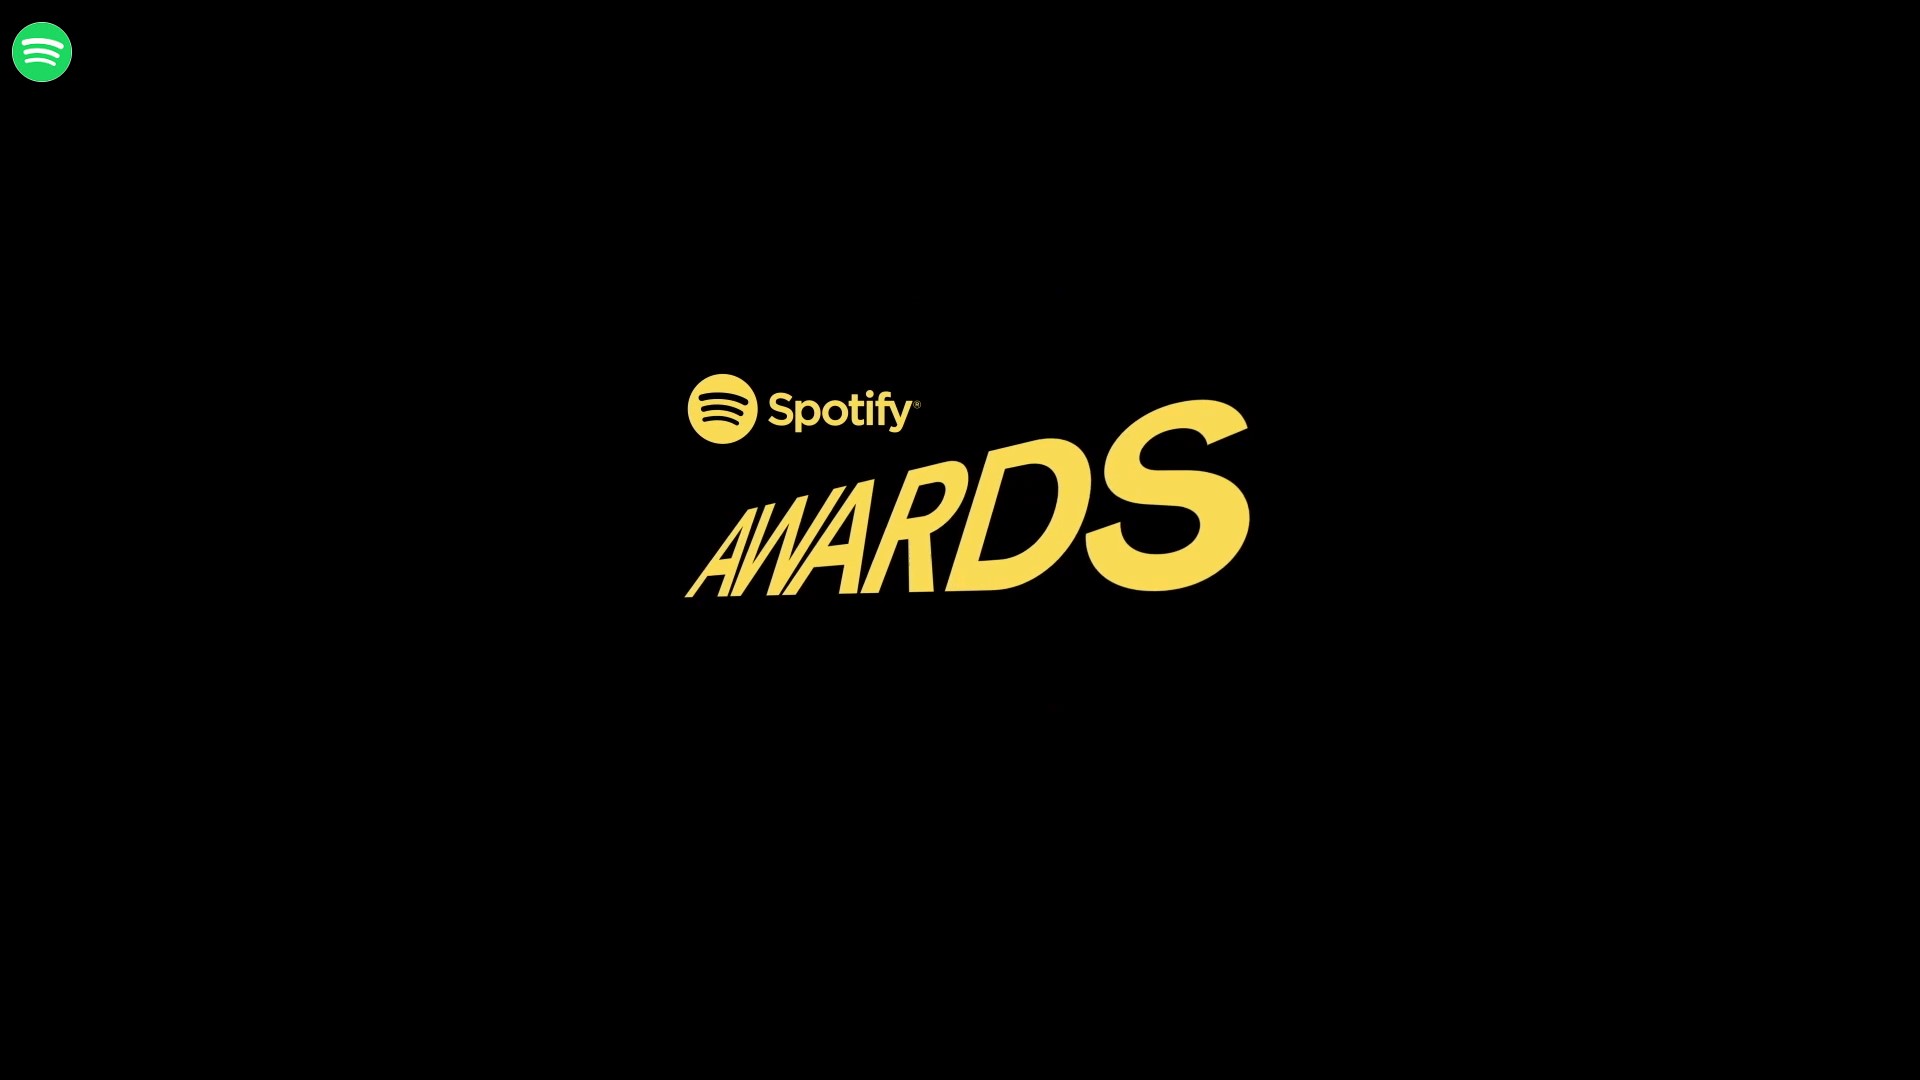 Spotify anuncia premiação musical “Spotify Awards” para 2020